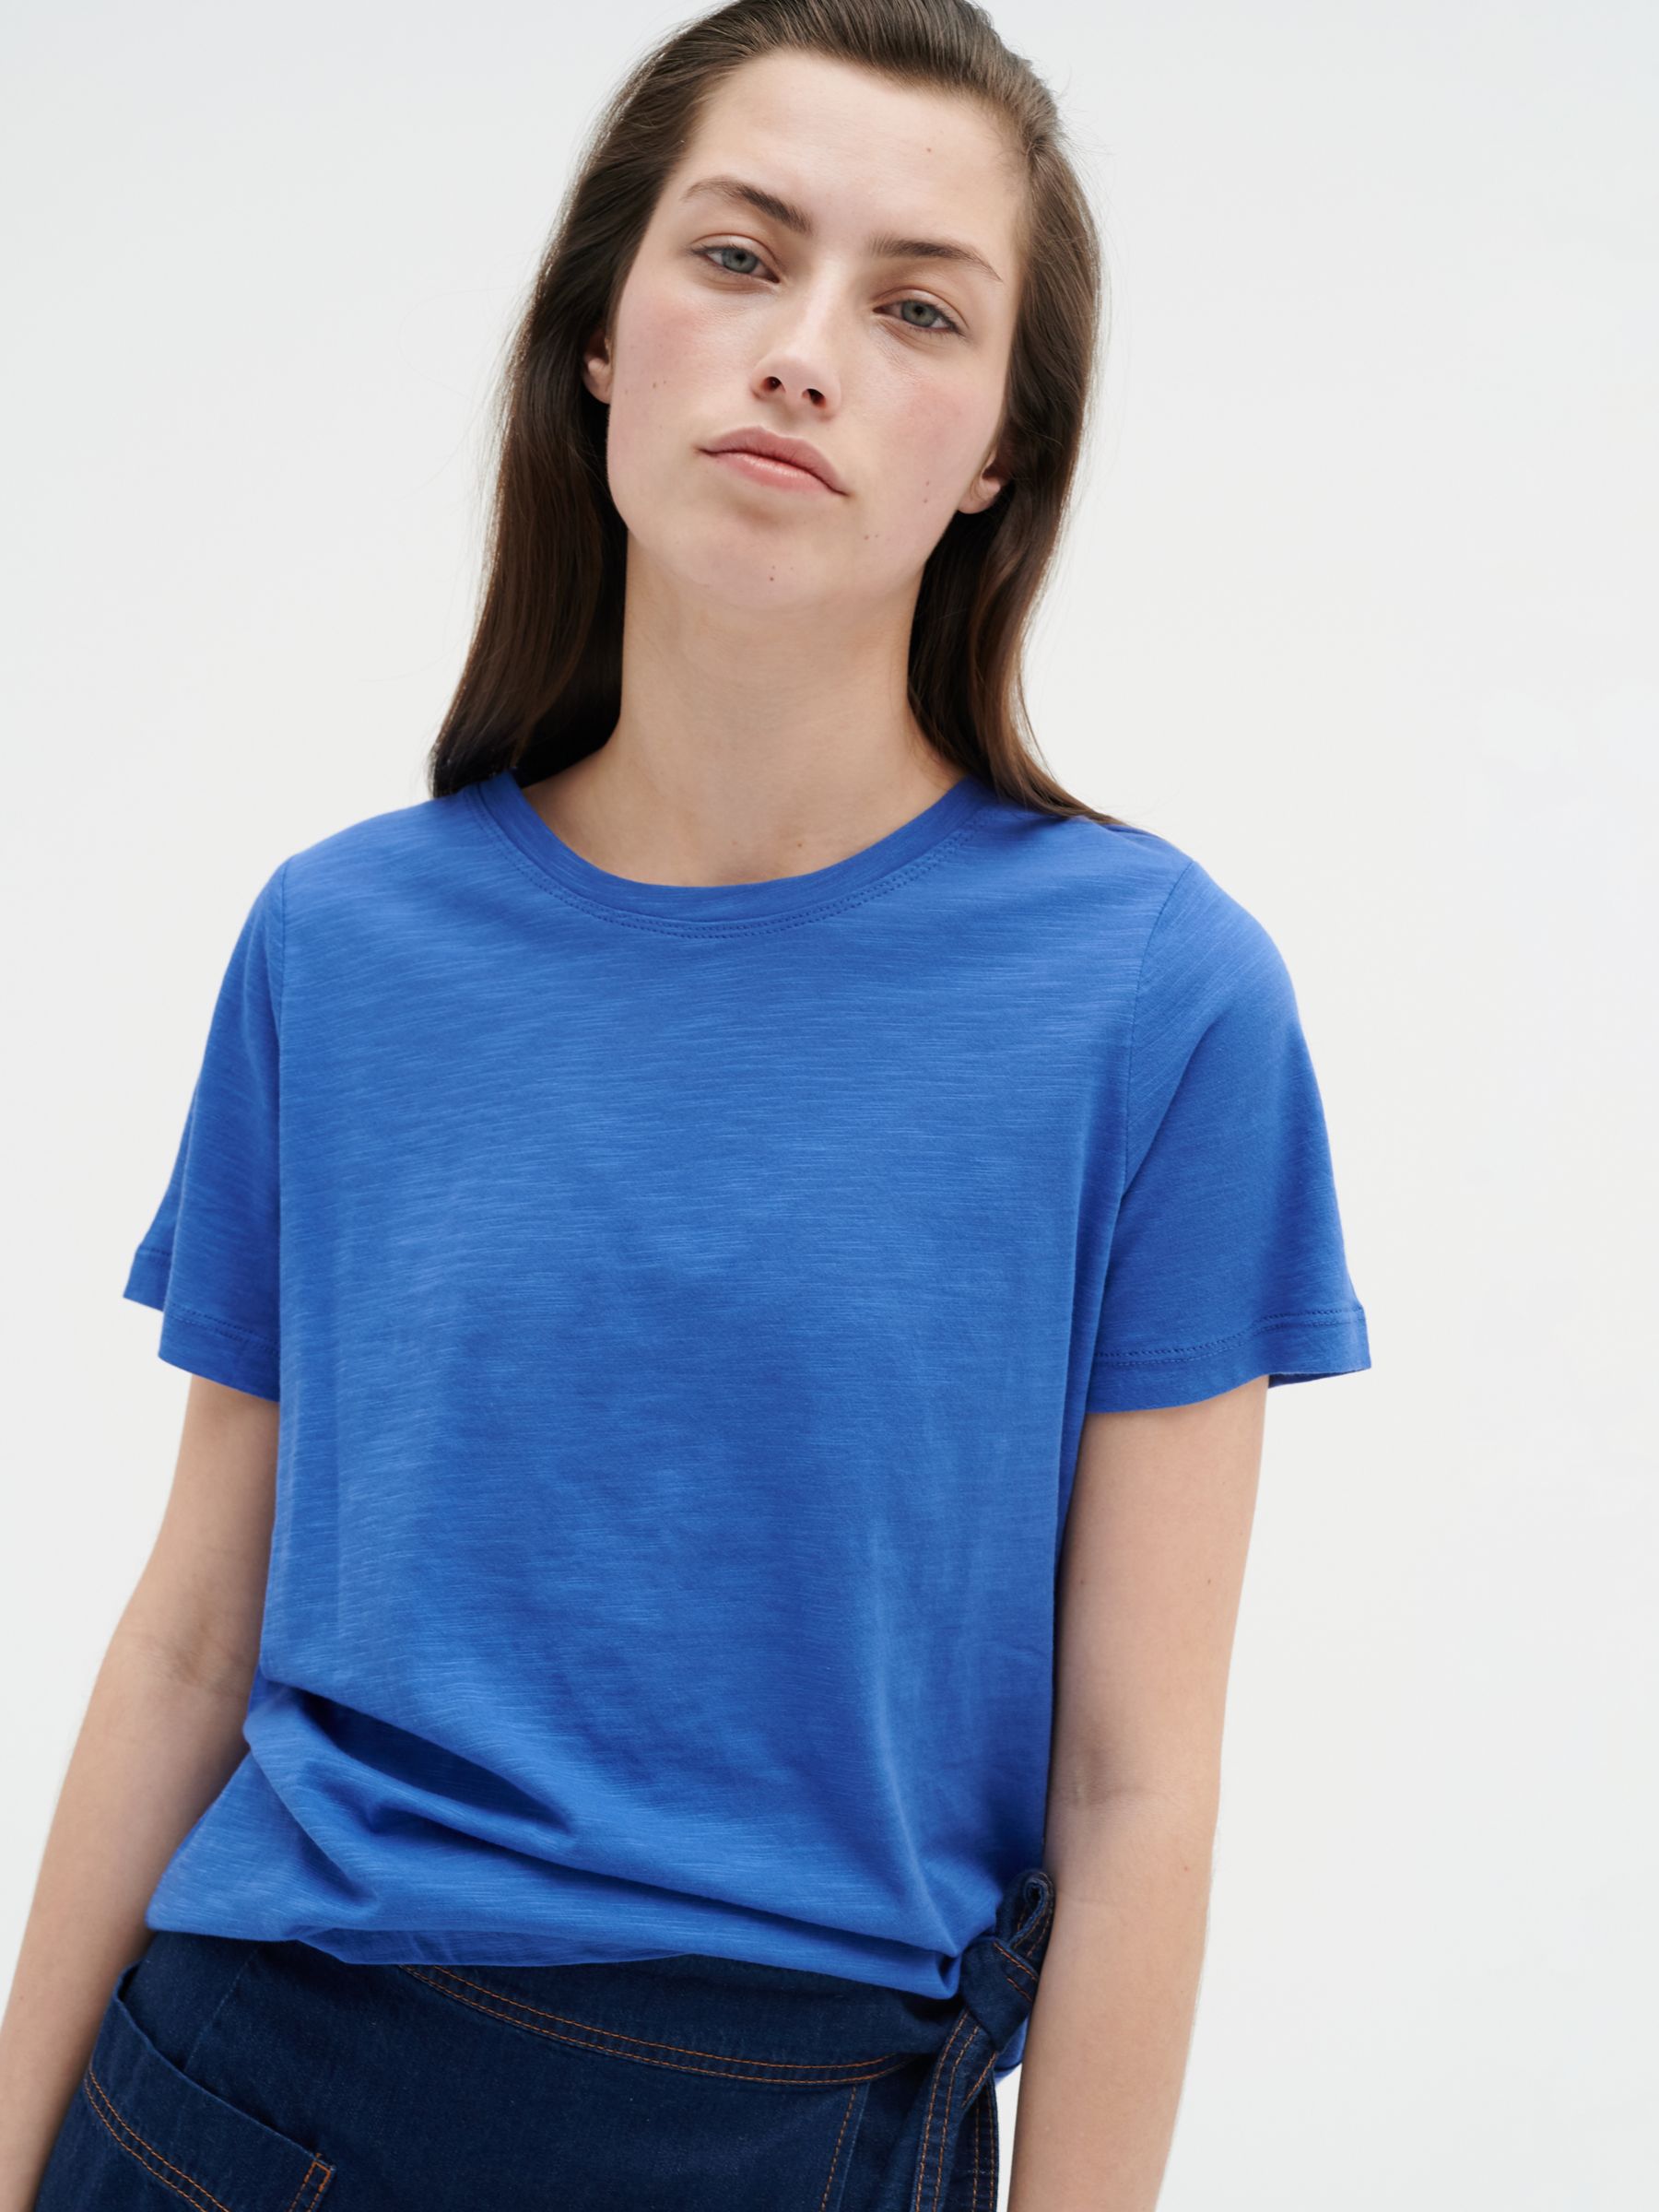 InWear Alma Plain T-Shirt, Sea Blue at John Lewis & Partners